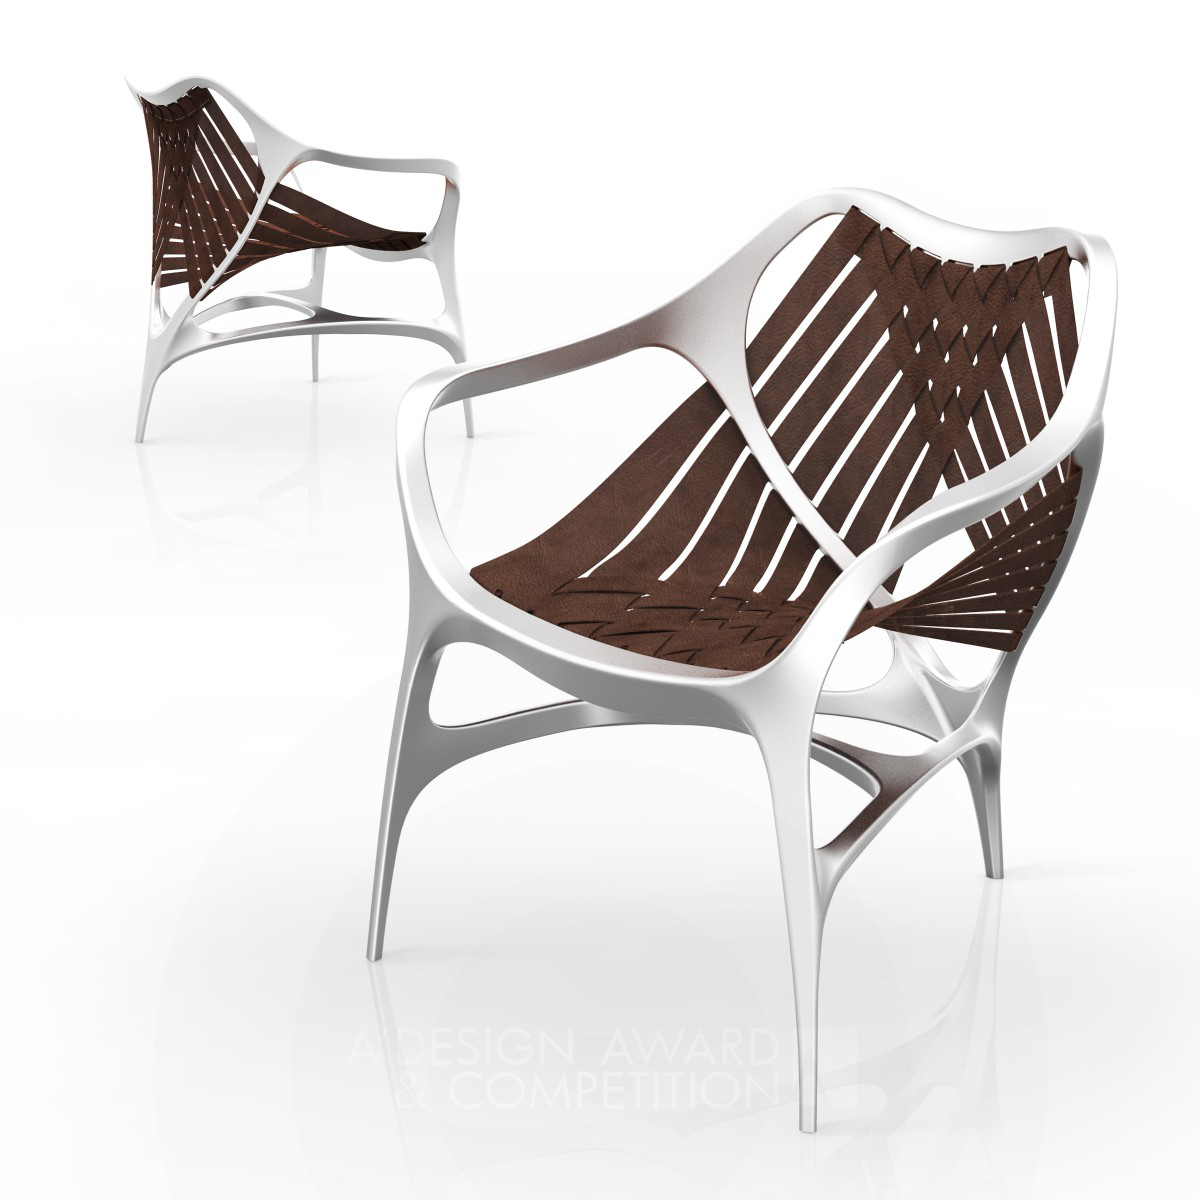 Manta Chair Bionic Design, Comfortable use by Wei Jingye, Chang Zhun and Ning Yingying Bronze Furniture Design Award Winner 2017 